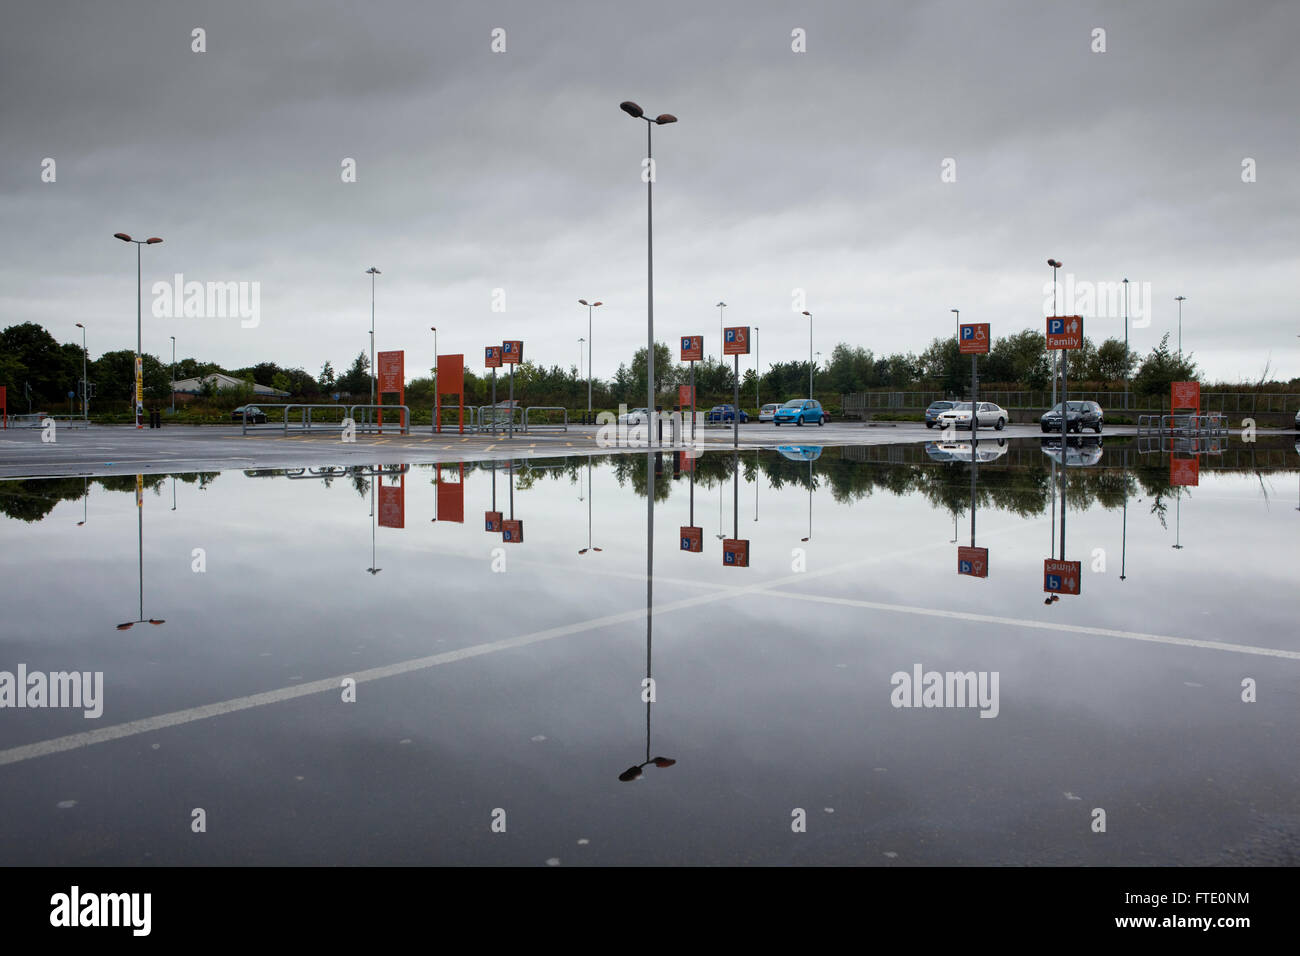 Un parcheggio allagato da heavy rain riflette il cielo e le vetture in un'immagine speculare in questo riassunto del paesaggio urbano. Foto Stock